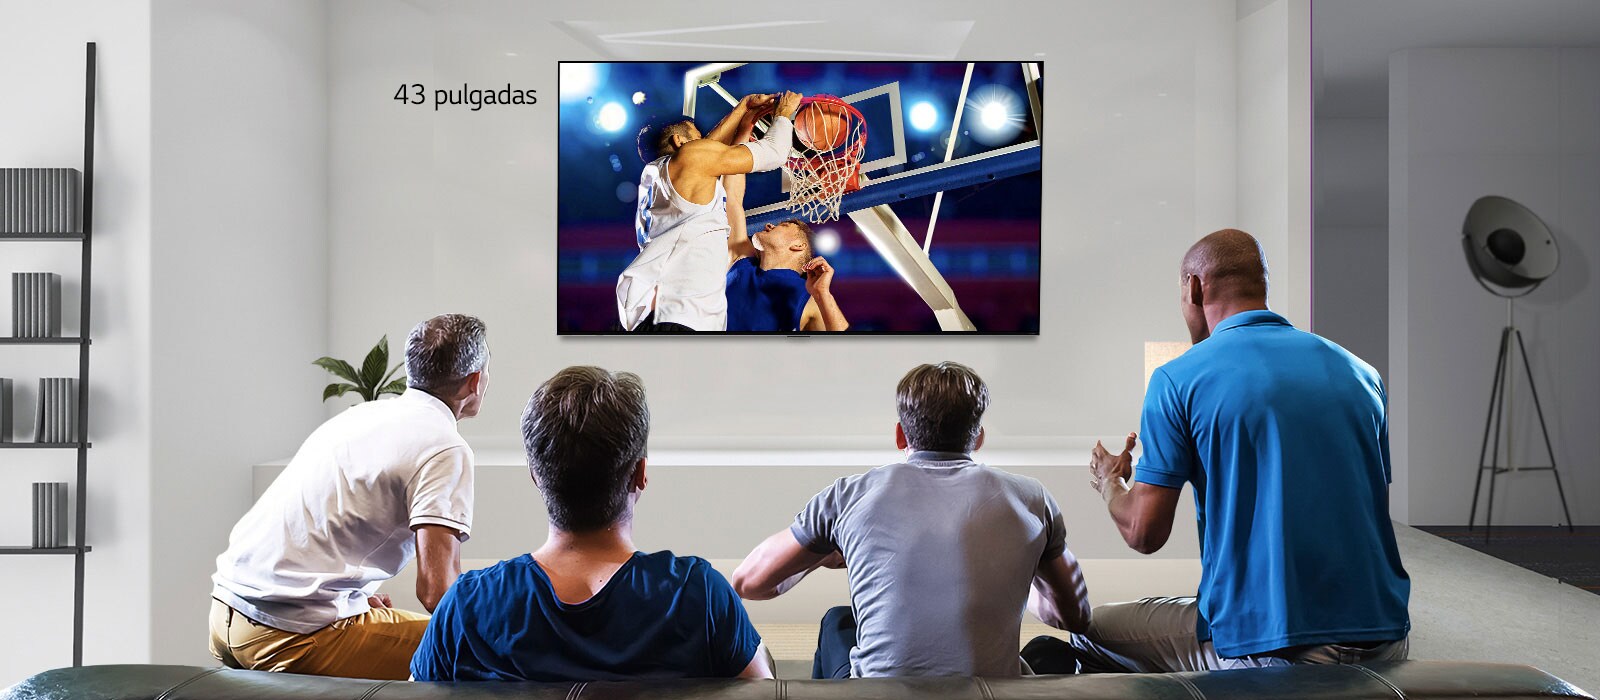 Vista trasera de un televisor montado en la pared que muestra cuatro hombres mirando un partido de basketball. Al desplazarse de izquierda a derecha se puede ver la diferencia en tamaño entre la pantalla de 43 pulgadas y la de 86 pulgadas.